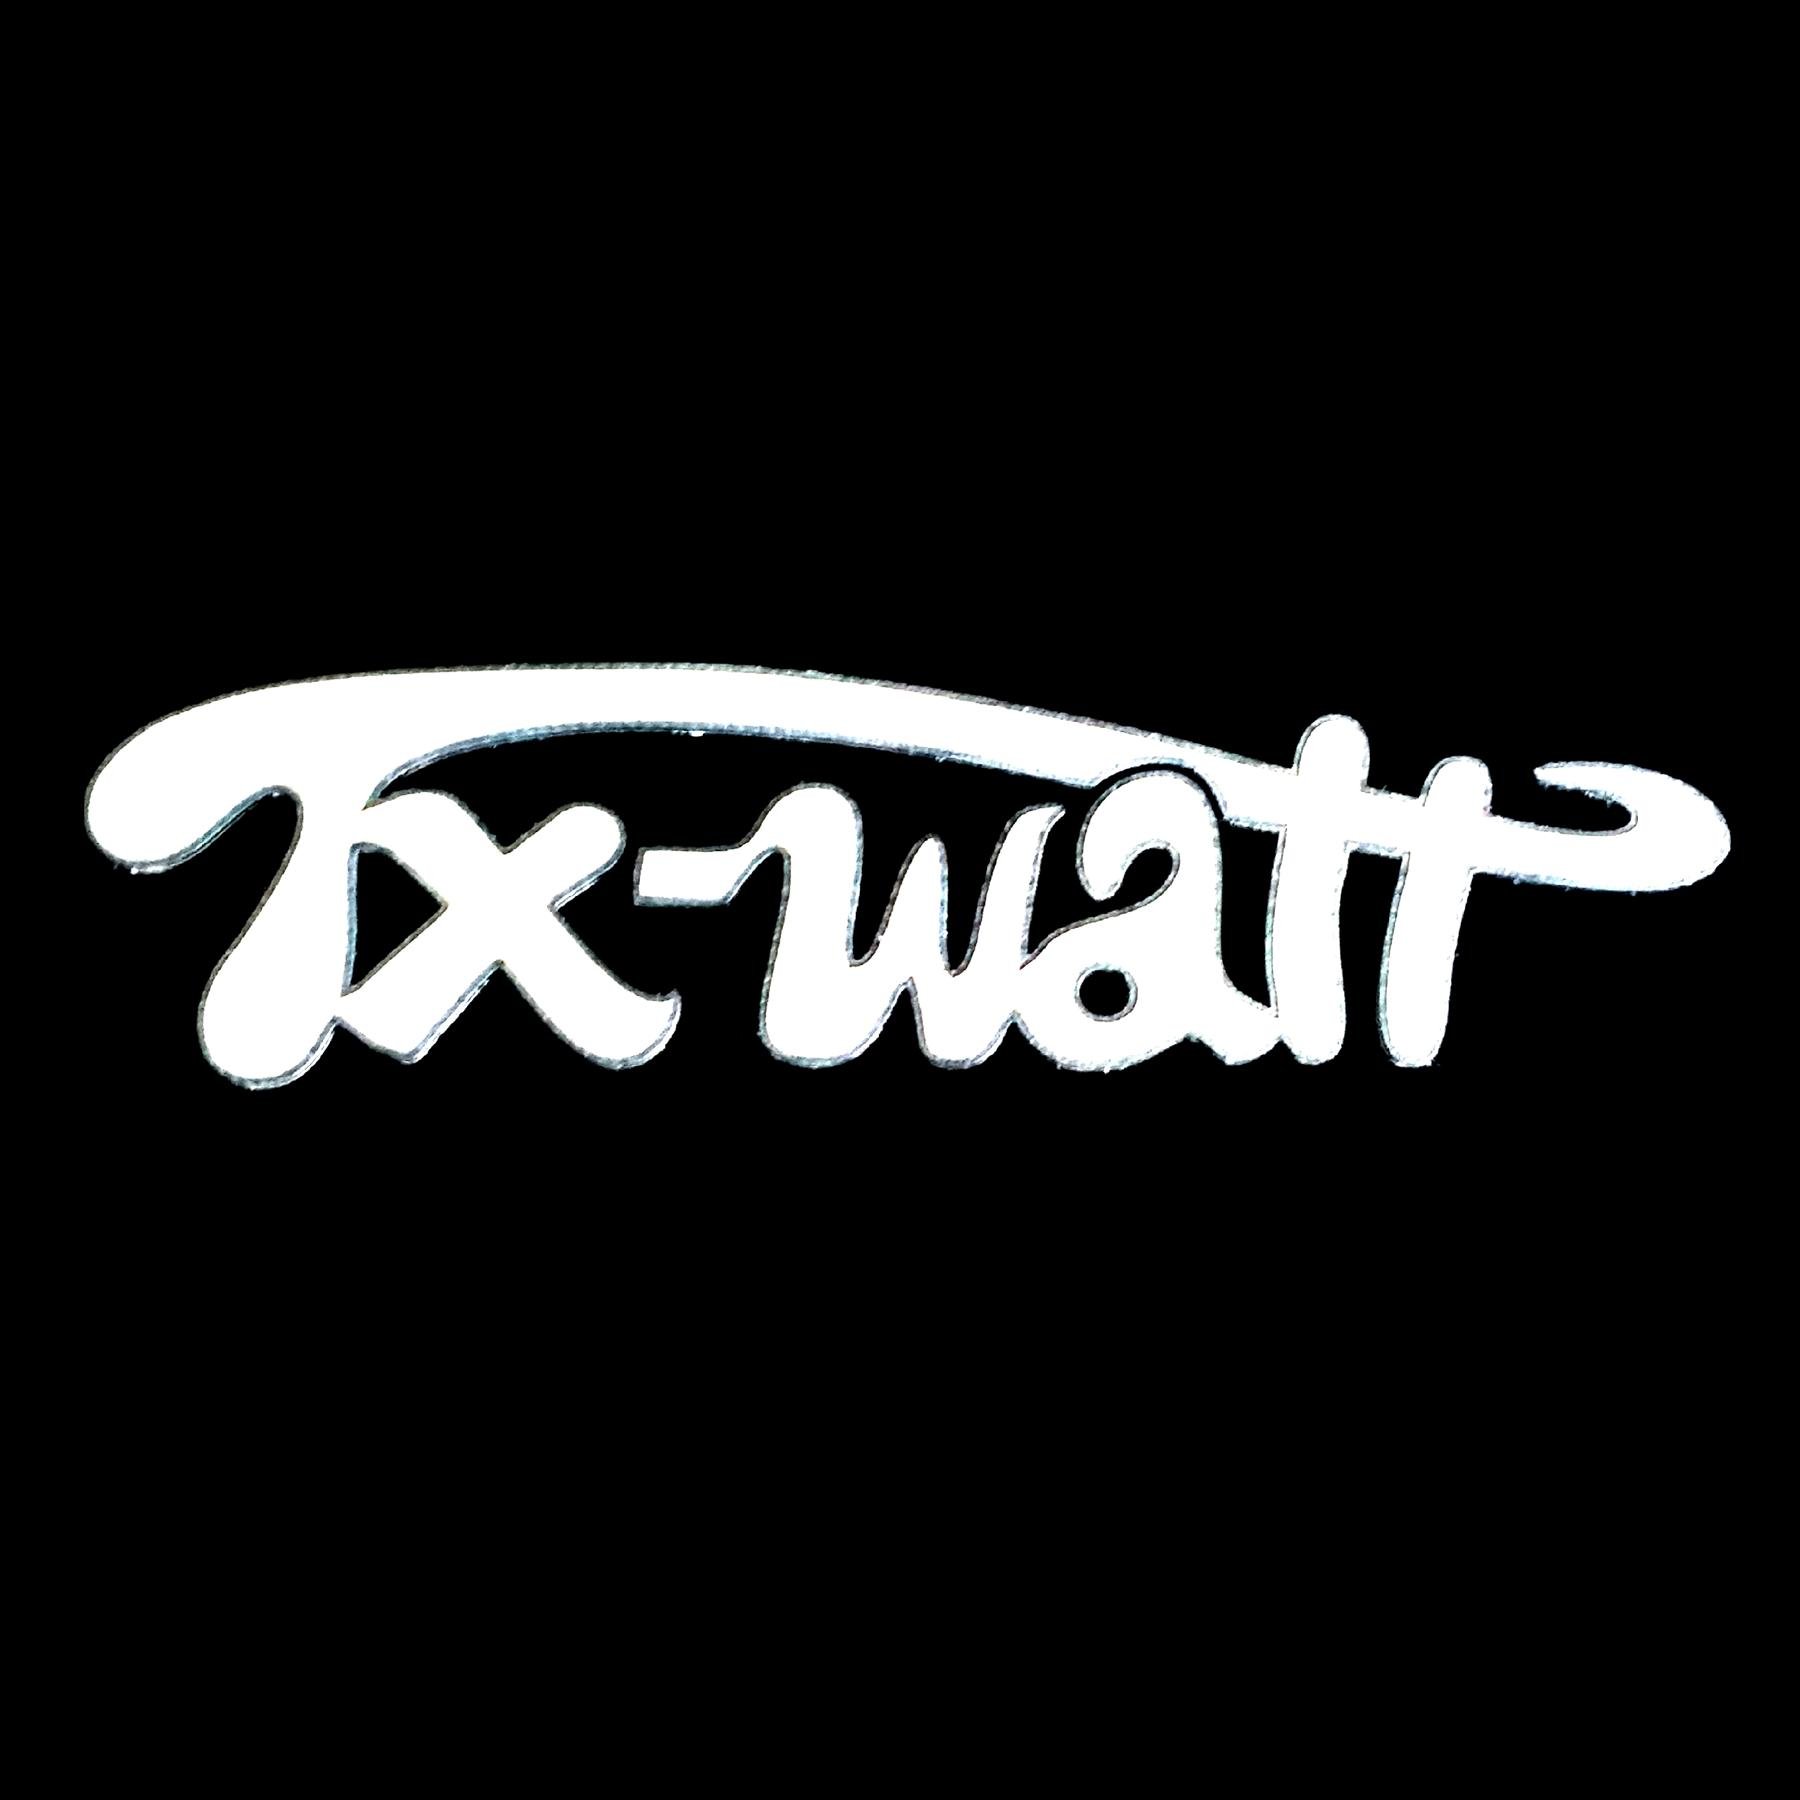 Tx-Watt